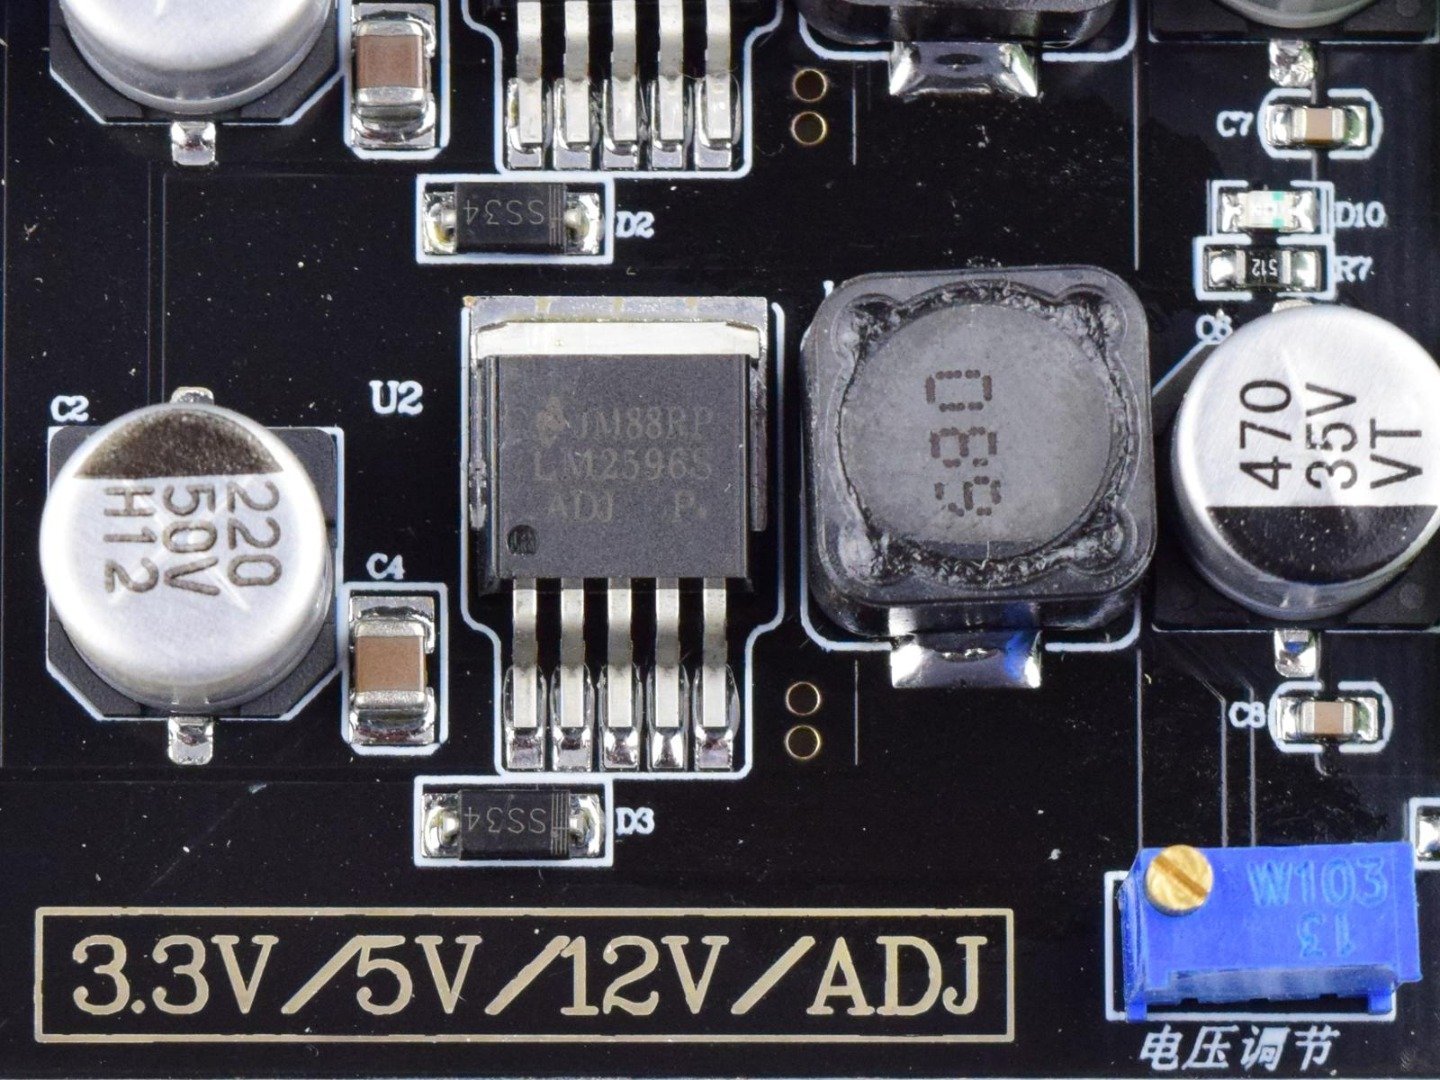 4 Channel Power Supply DC-DC Converter Module 3.3V – 5V – 12V – Adjustable 8